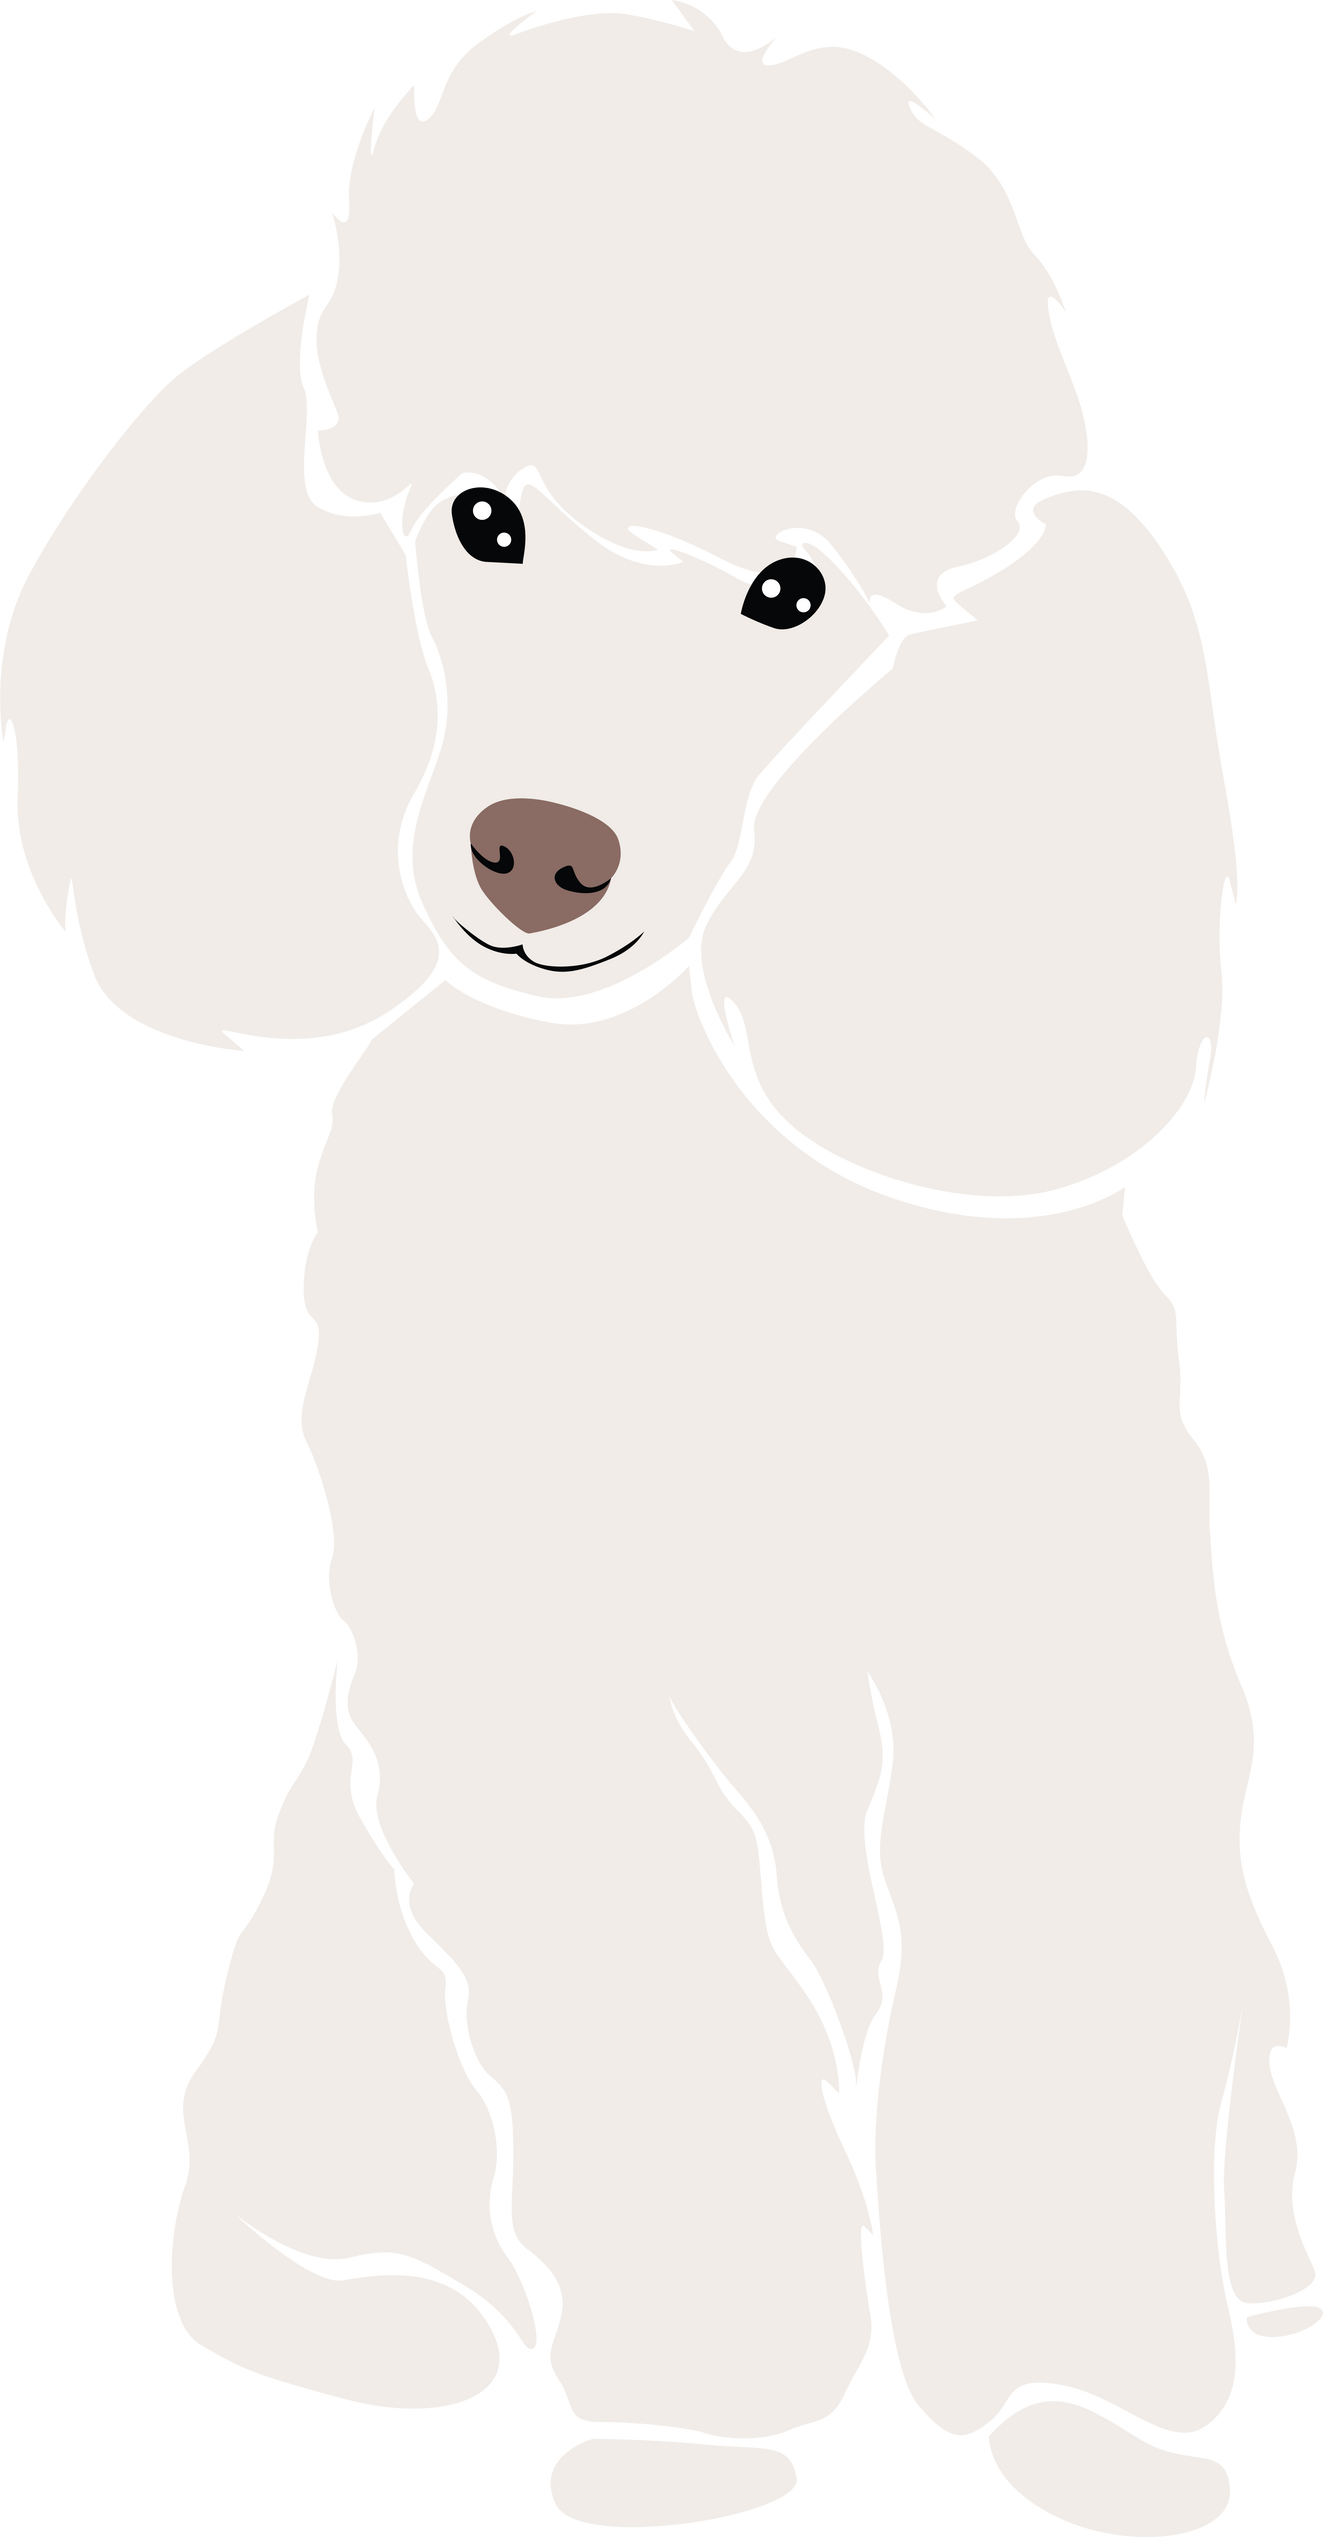 Poodle Dog Illustration